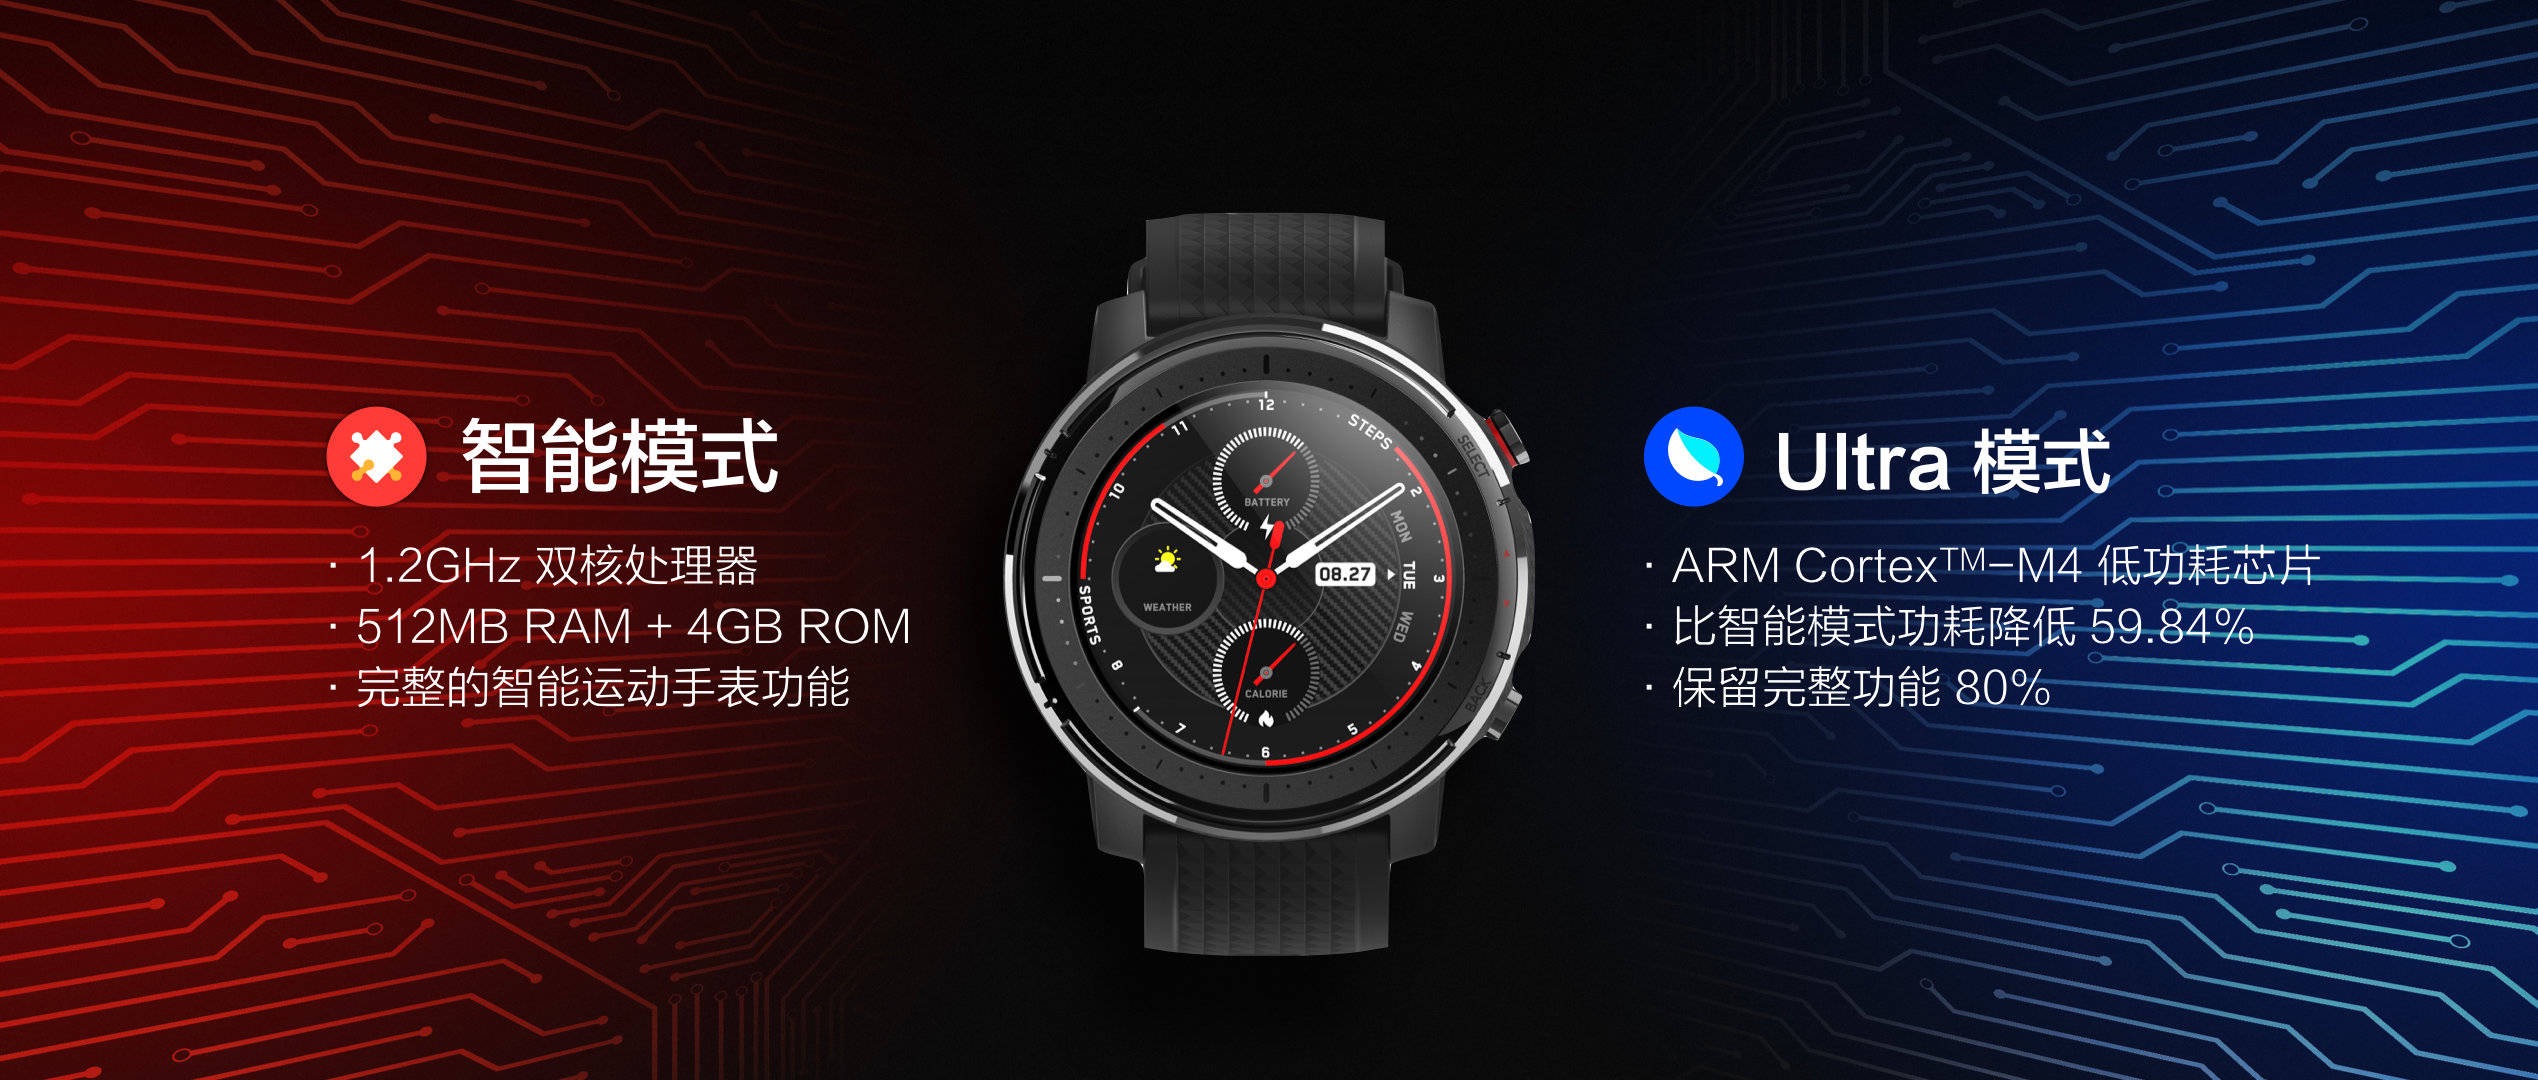 Умные спортивные часы Amazfit 3, особенности, цена и технические характеристики. Xiaomi последние новости